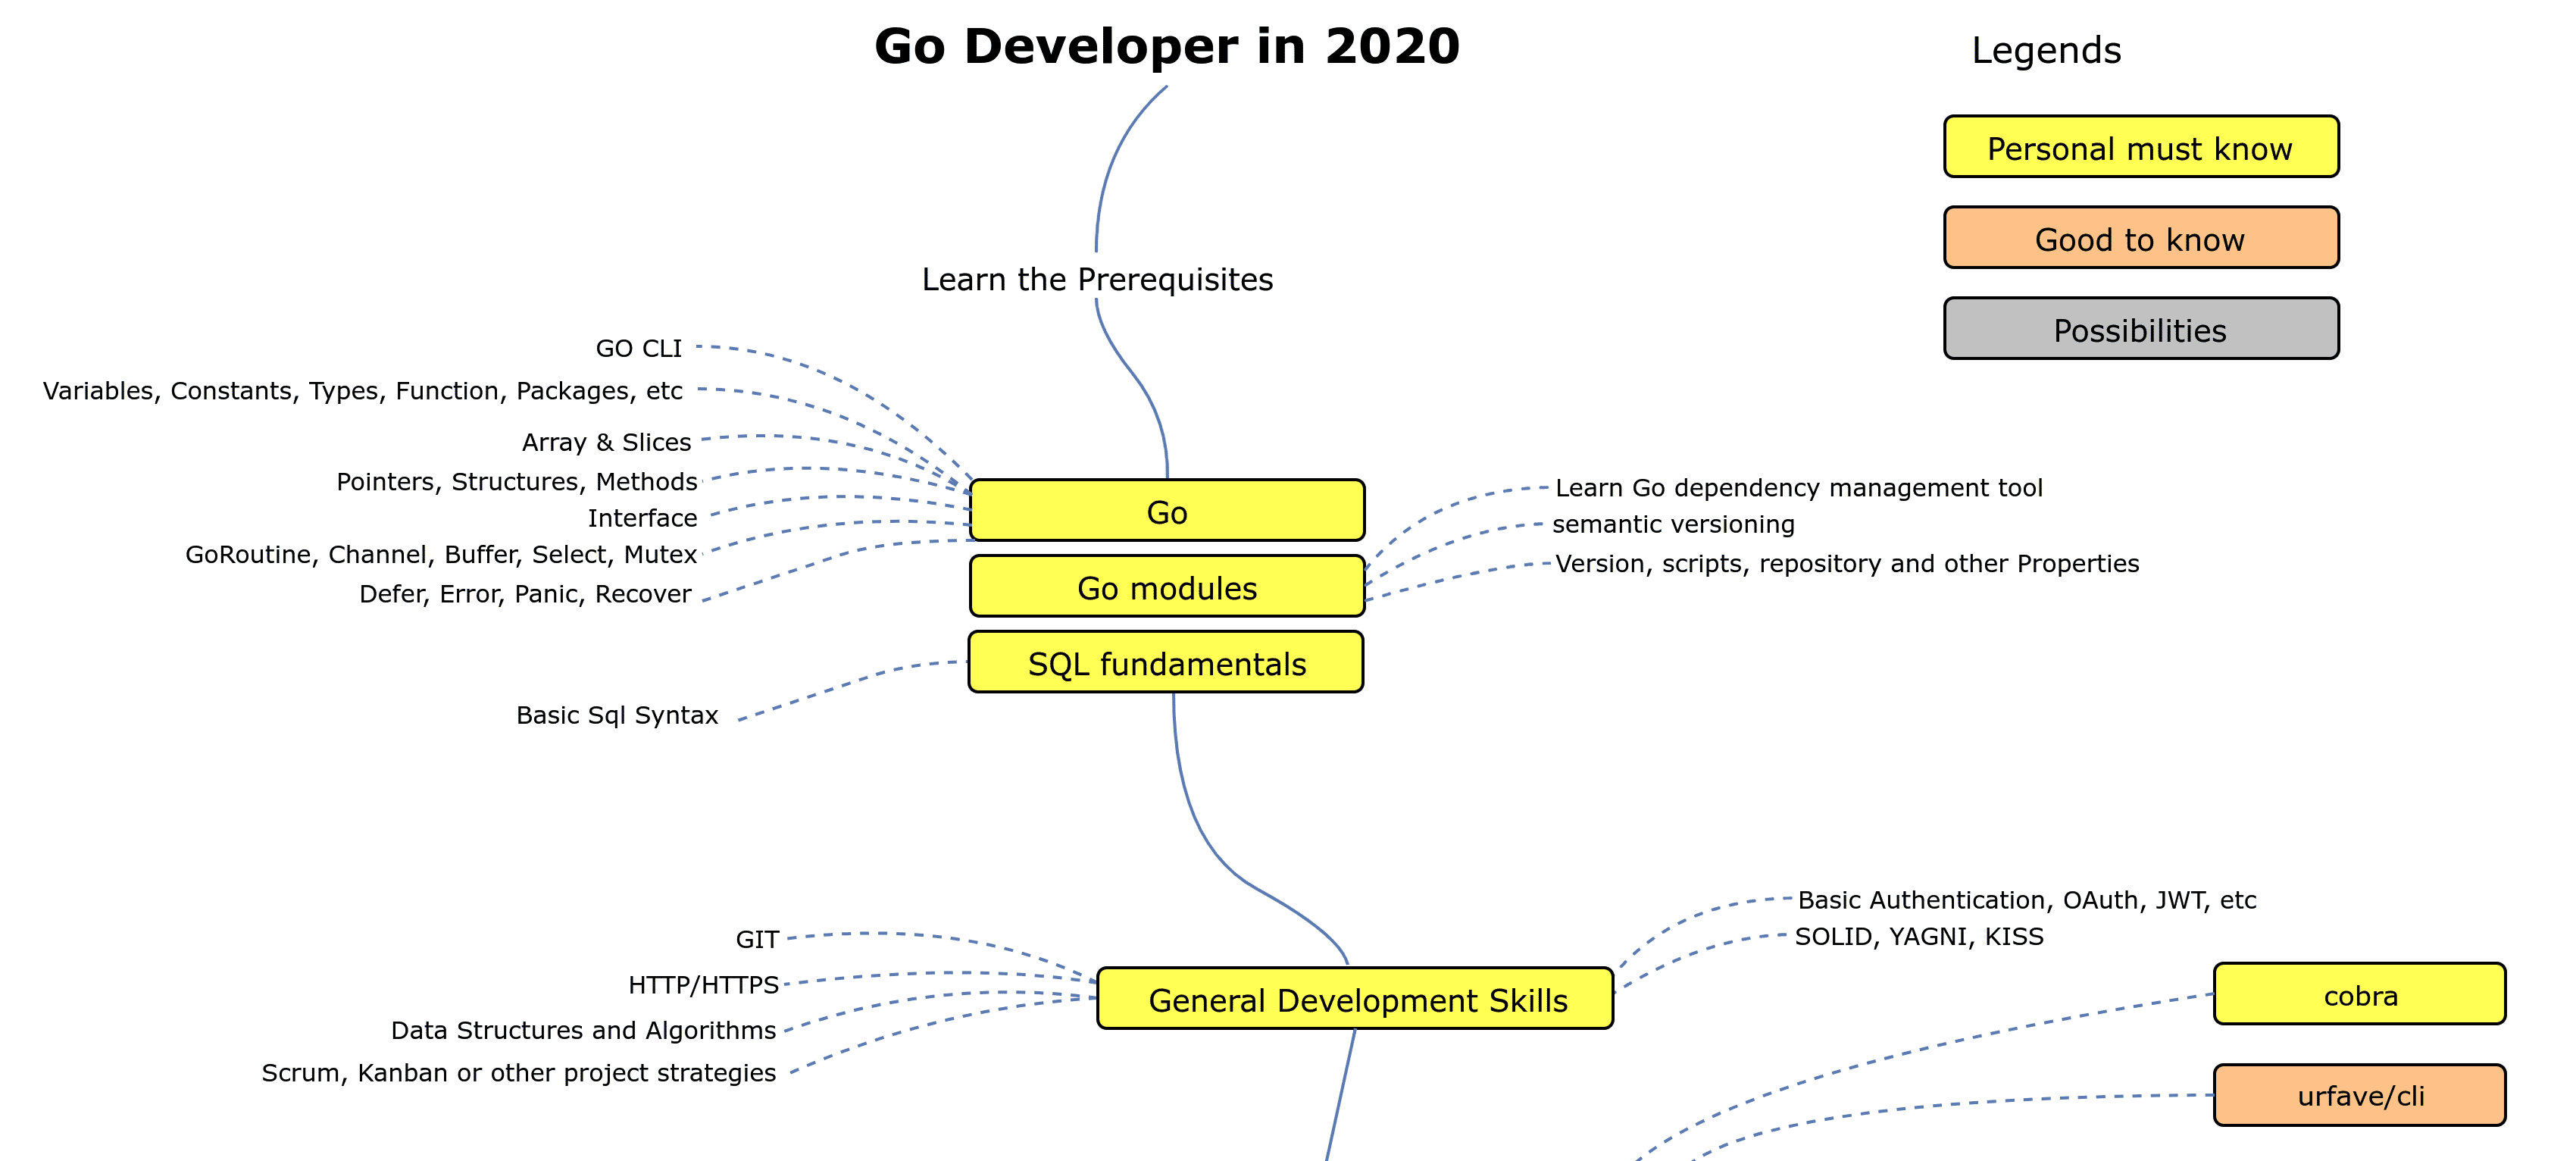 Go Developer Roadmap 2020